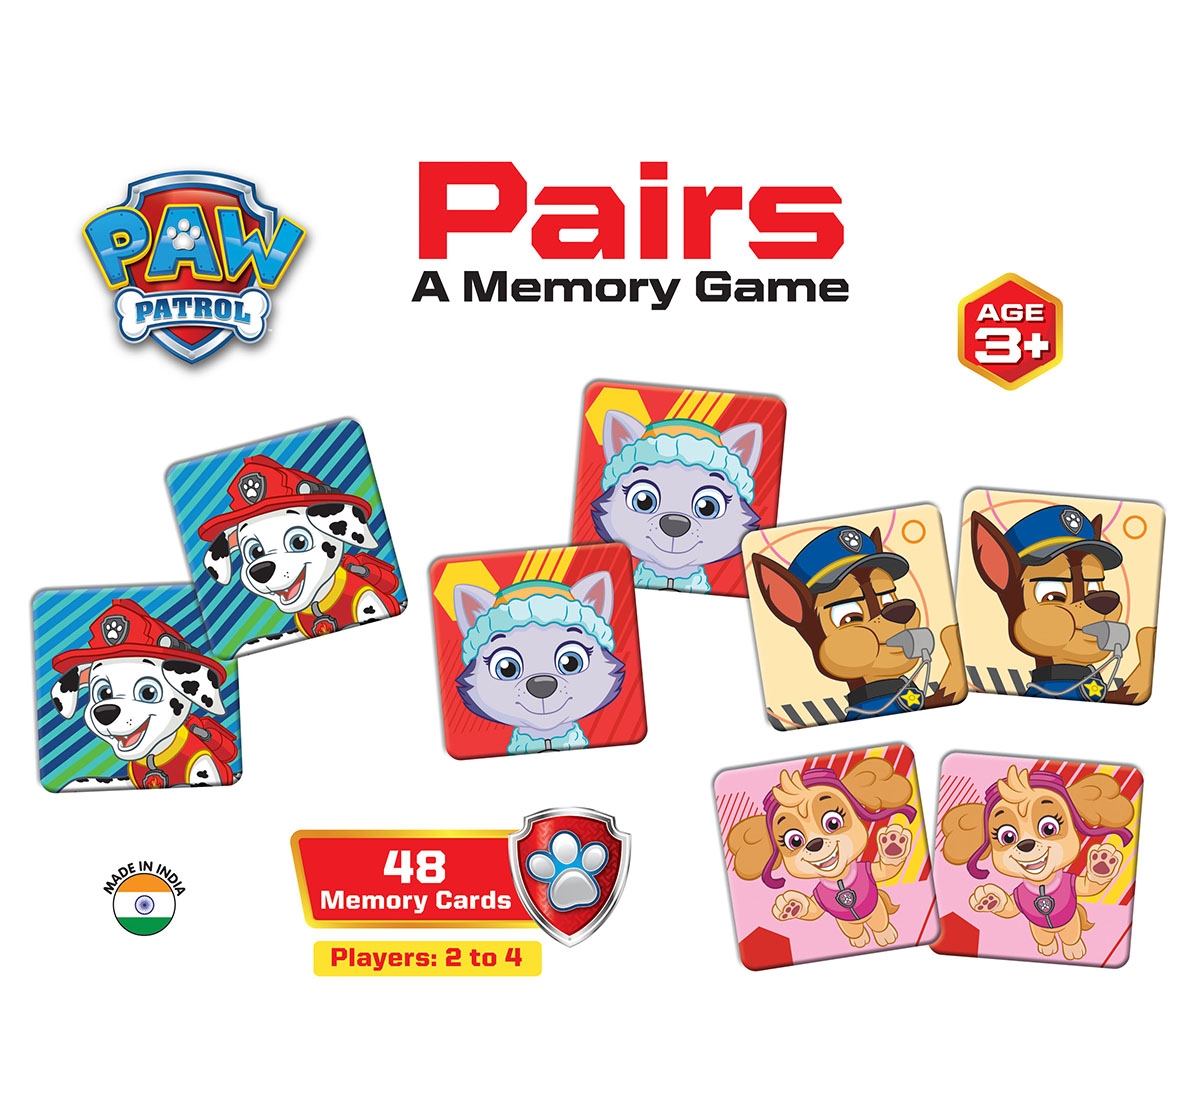 Paw Patrol Pairs - A Memory Game, 3Y+